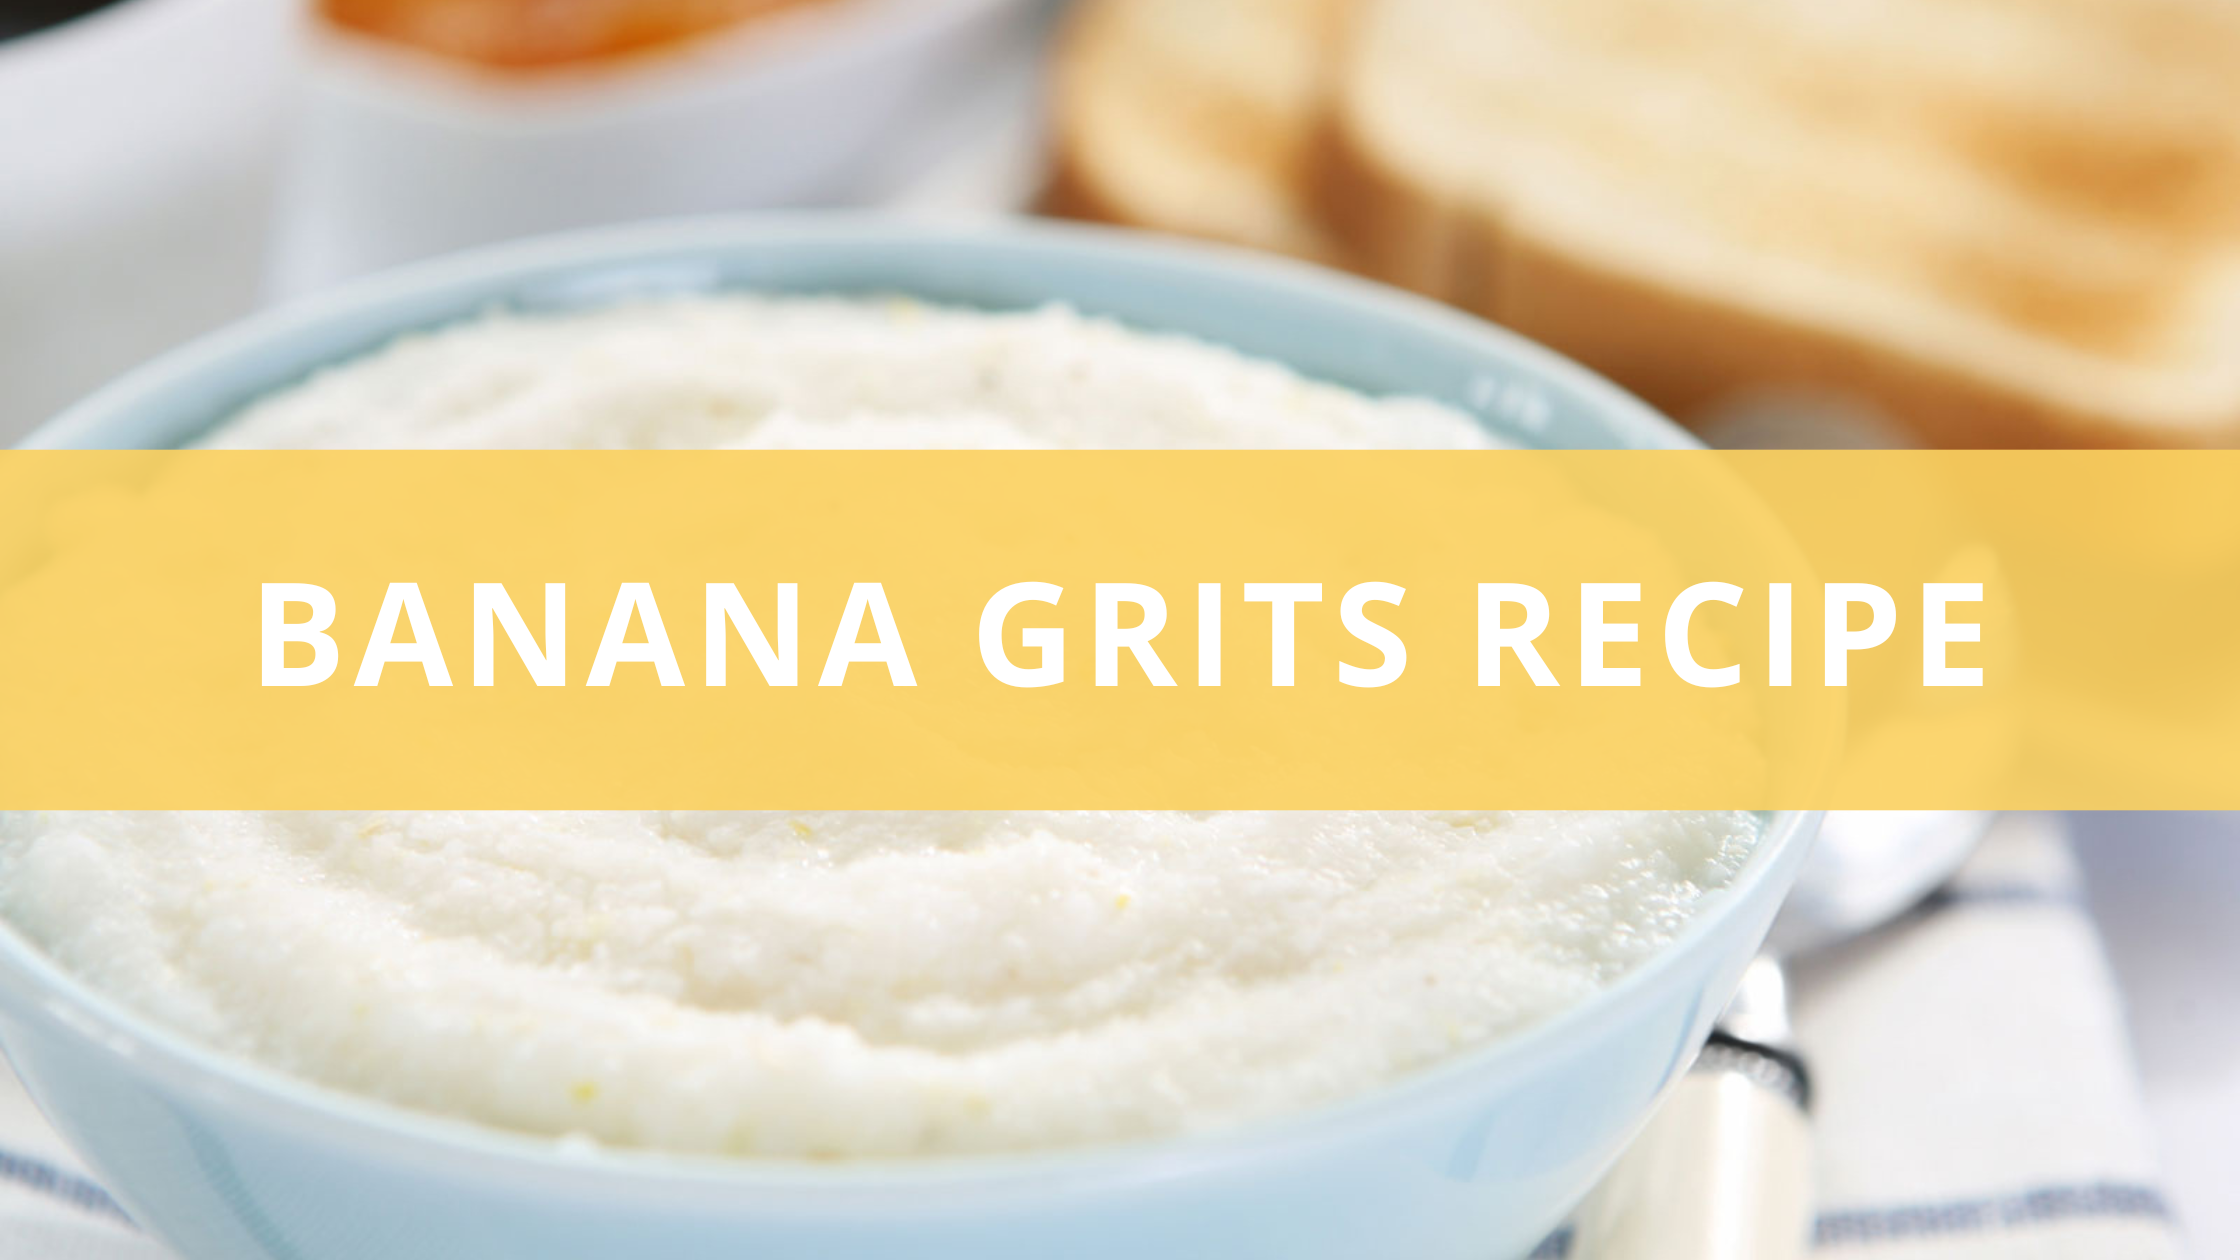 My Banana Grits Recipe